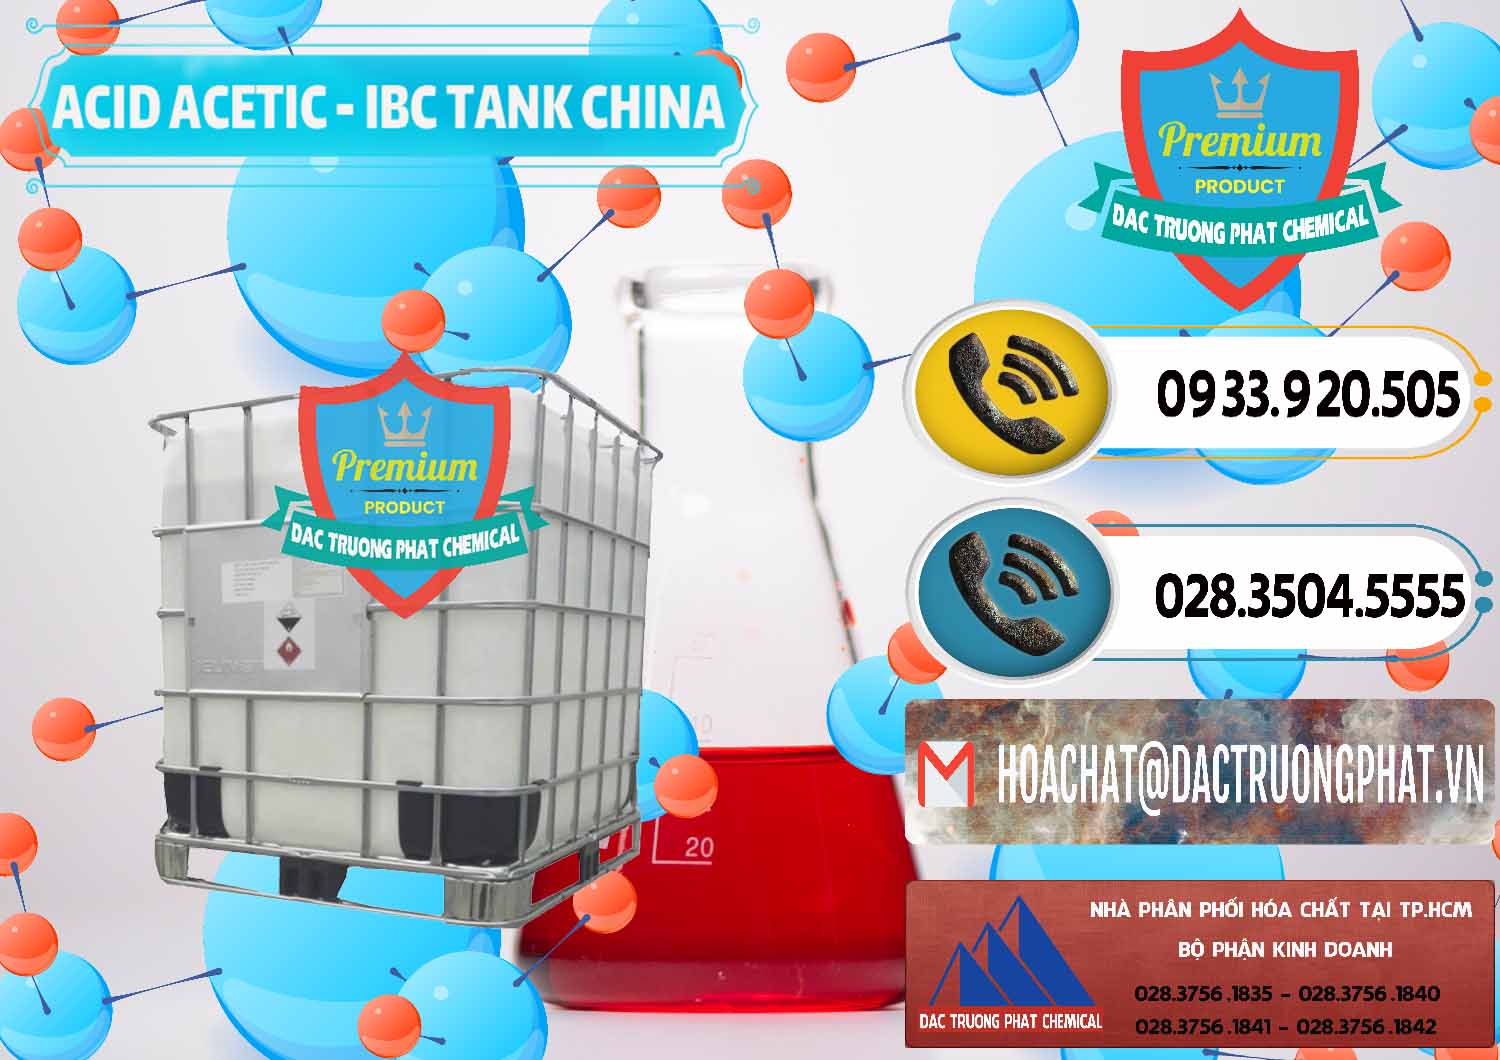 Đơn vị chuyên bán ( cung cấp ) Acetic Acid – Axit Acetic Tank Bồn IBC Trung Quốc China - 0443 - Đơn vị phân phối ( bán ) hóa chất tại TP.HCM - hoachatdetnhuom.vn